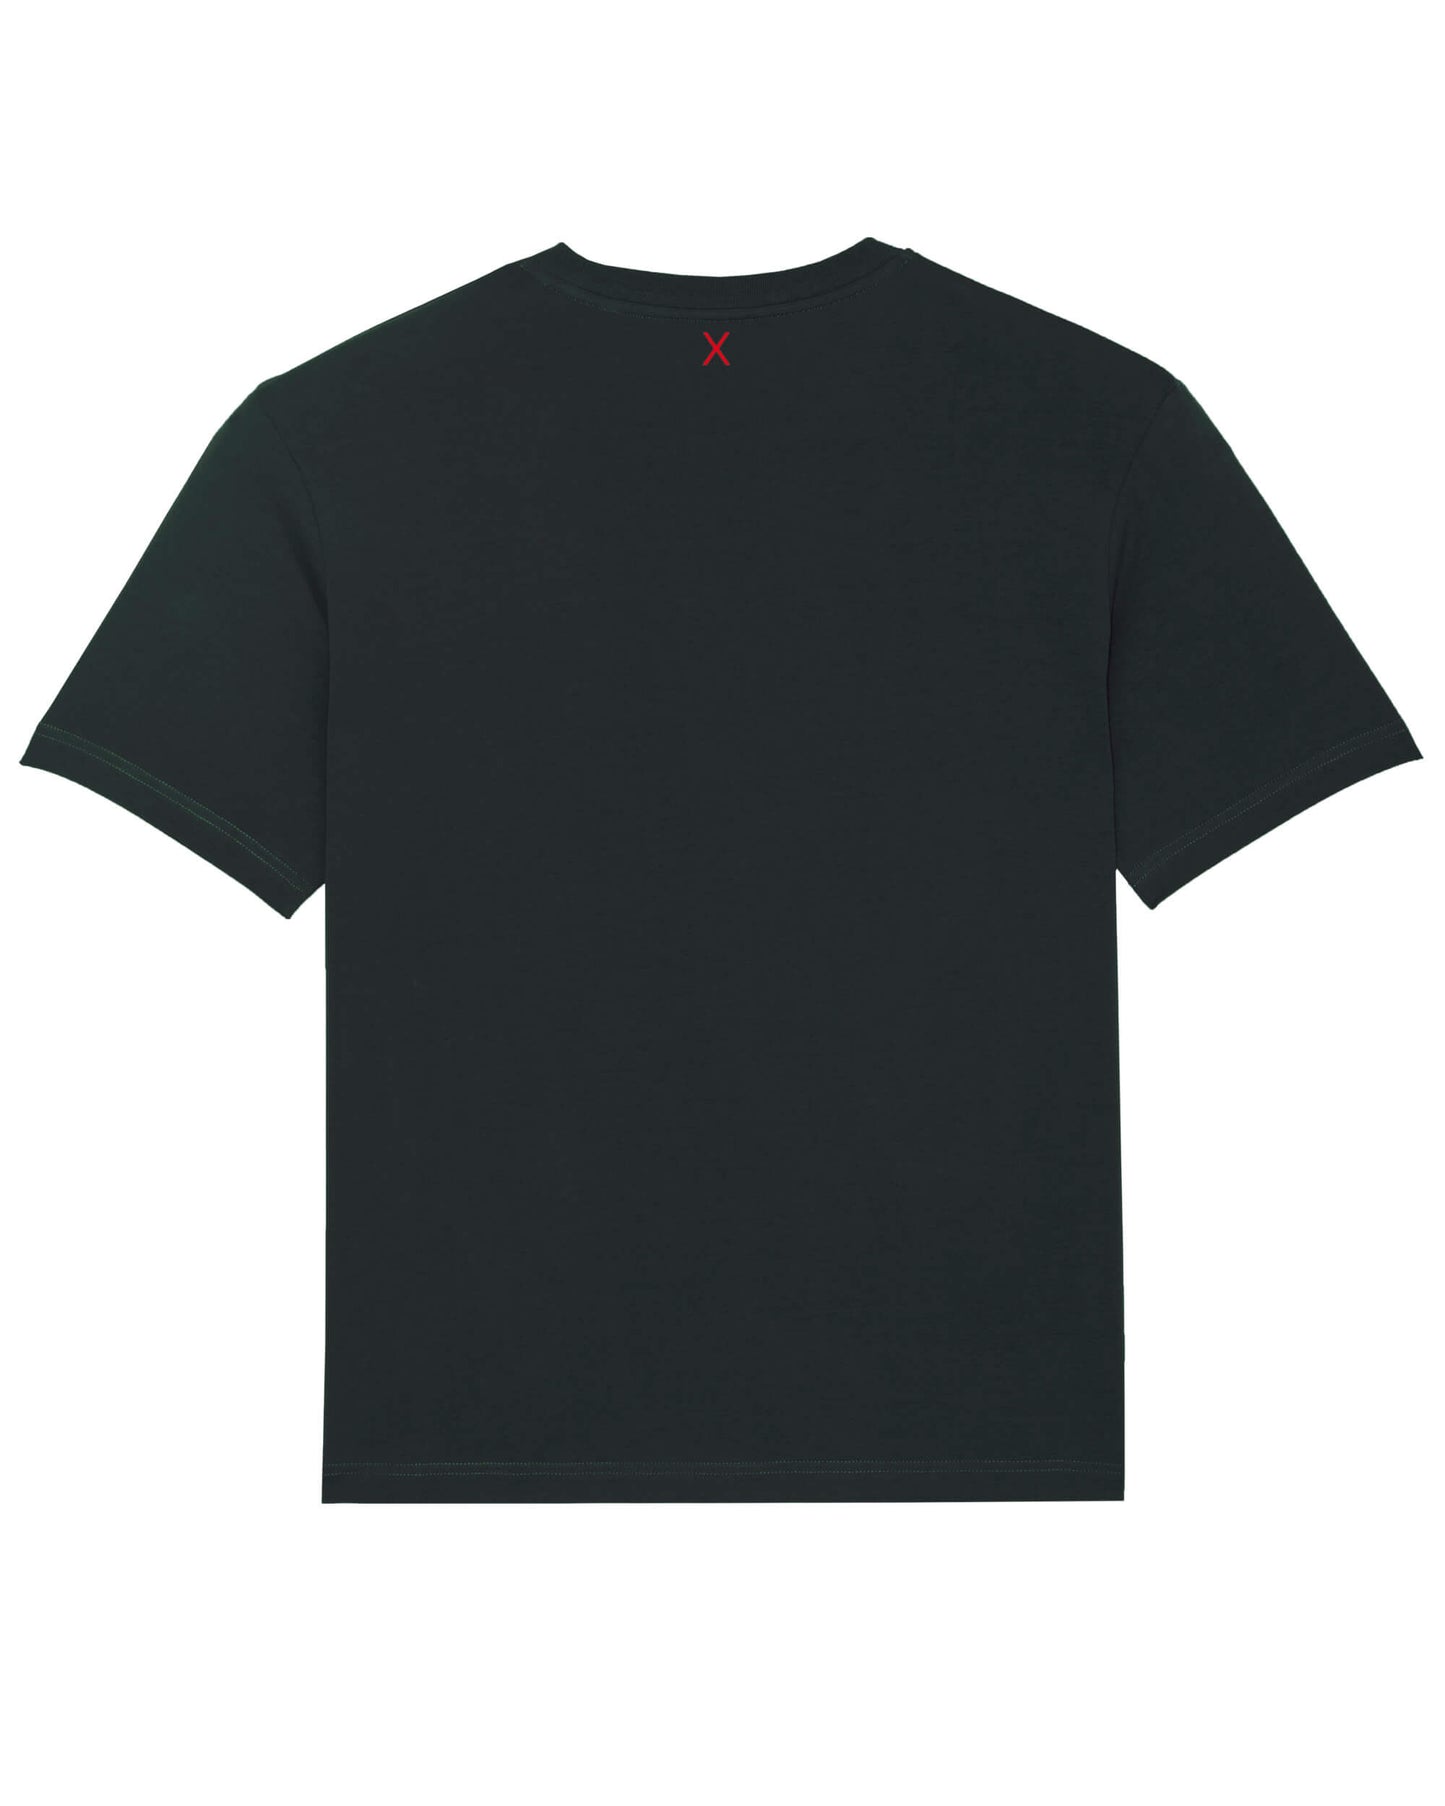 Produktbild eine schwarzen T-Shirts (Rückseite). Mittig unter dem Nacken-Saum befindet sich das ikonische Extra X in rot, das in starkem, farblichen Kontrast steht und deutlich hervorsticht.